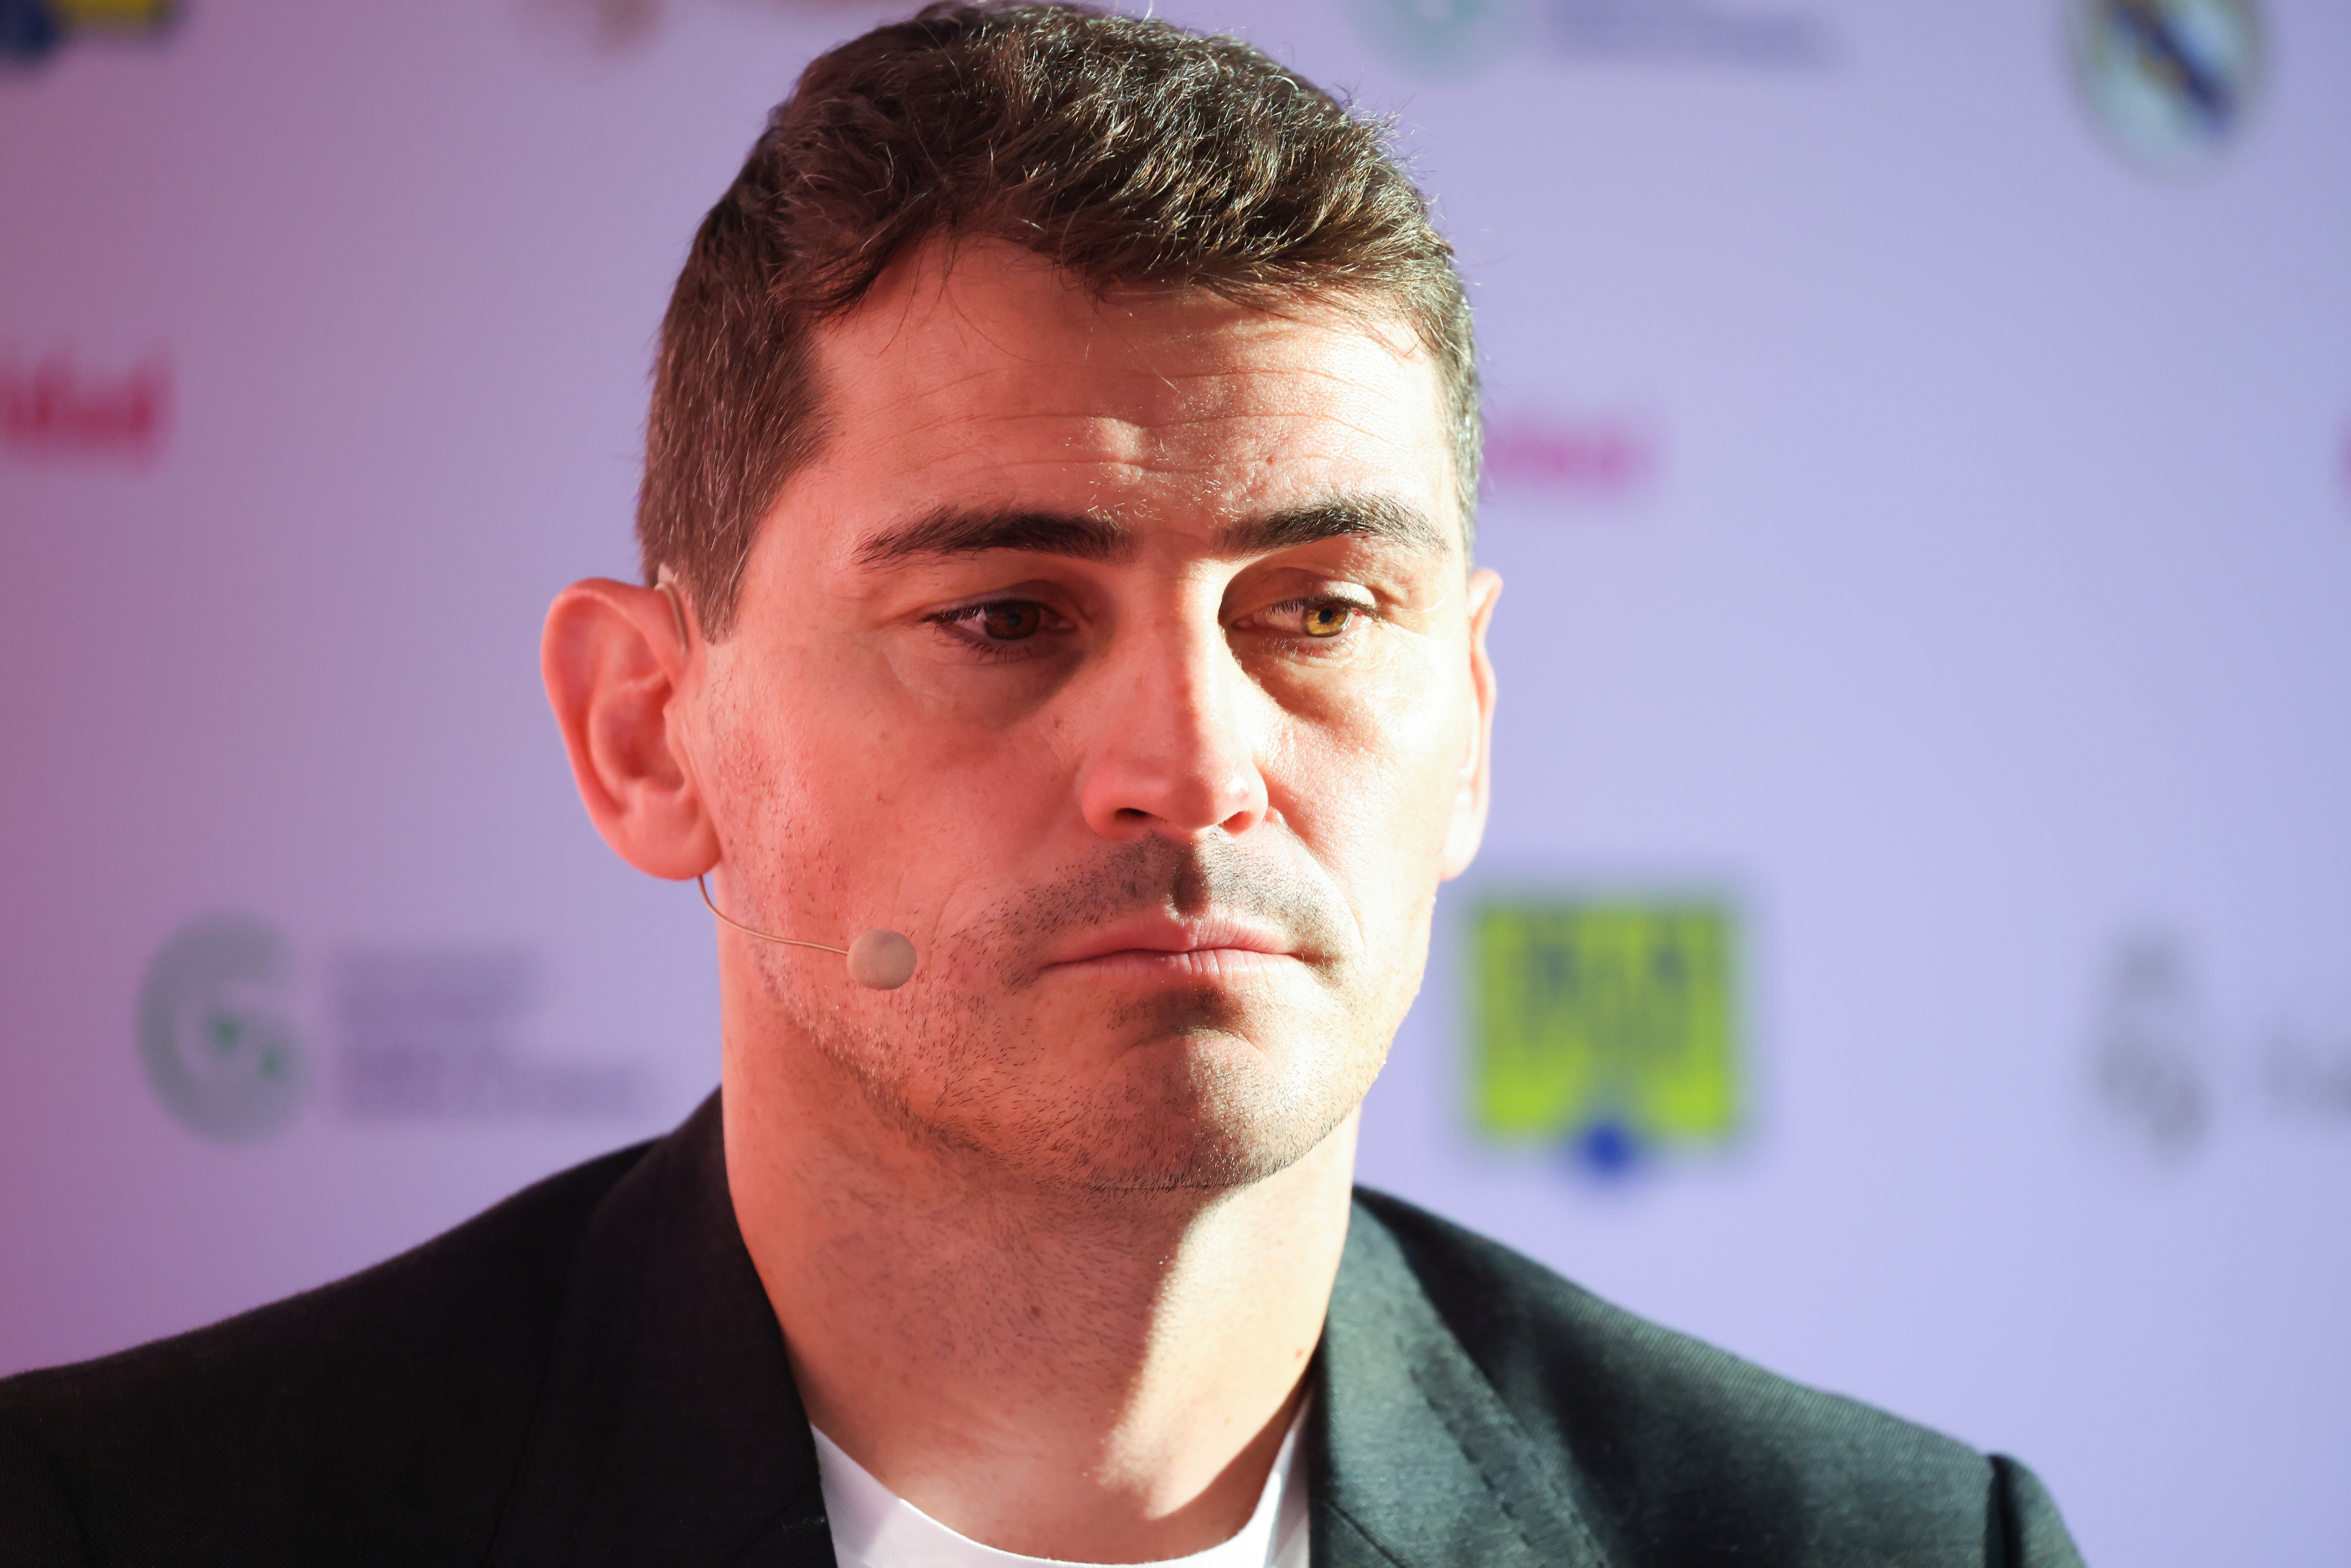 El sueldo indecente de Iker Casillas en el Mundial de TVE, Iniesta cobró mucho menos